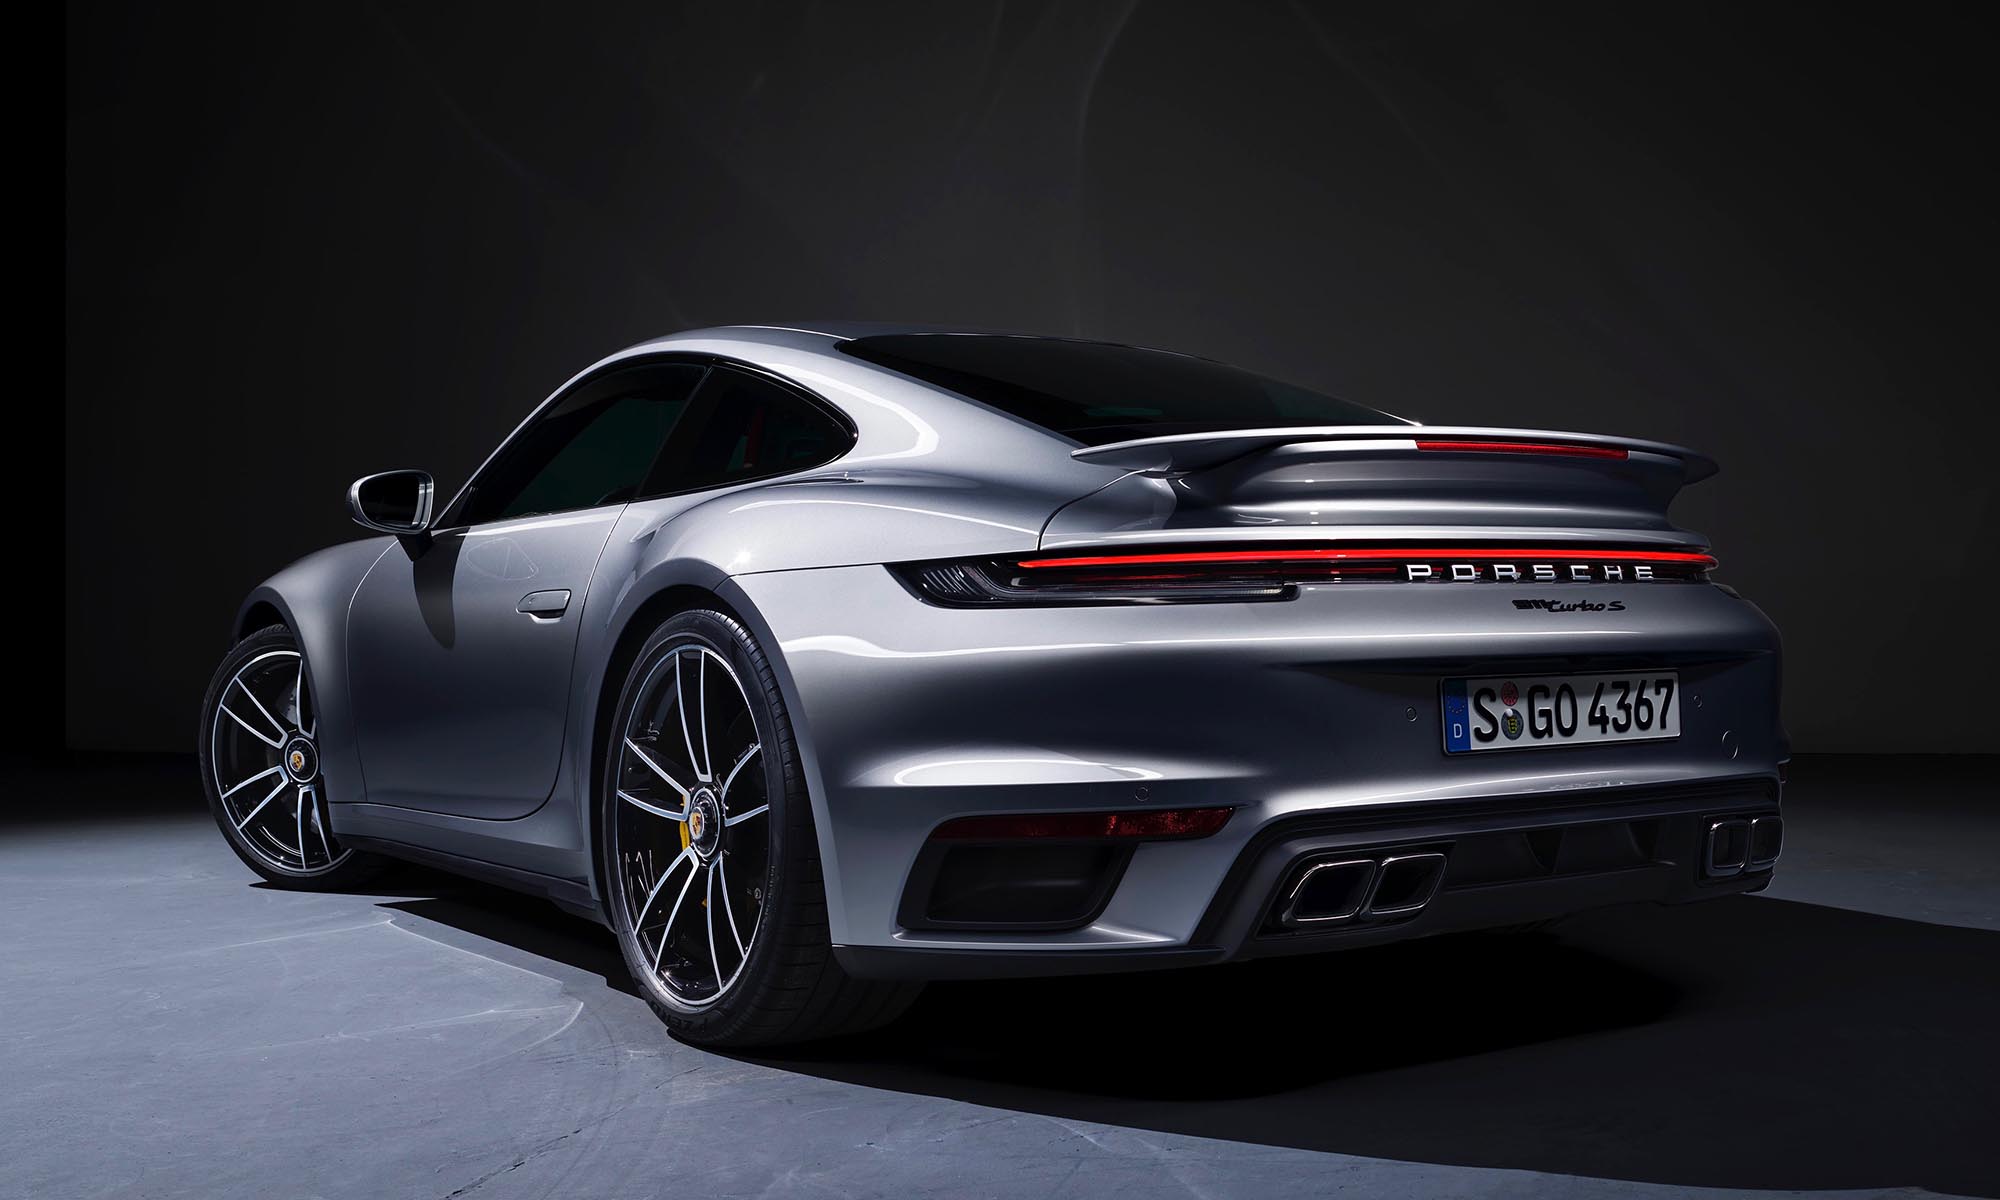 Mindenkit legyorsulna az új Porsche 911 Turbo S Az online férfimagazin